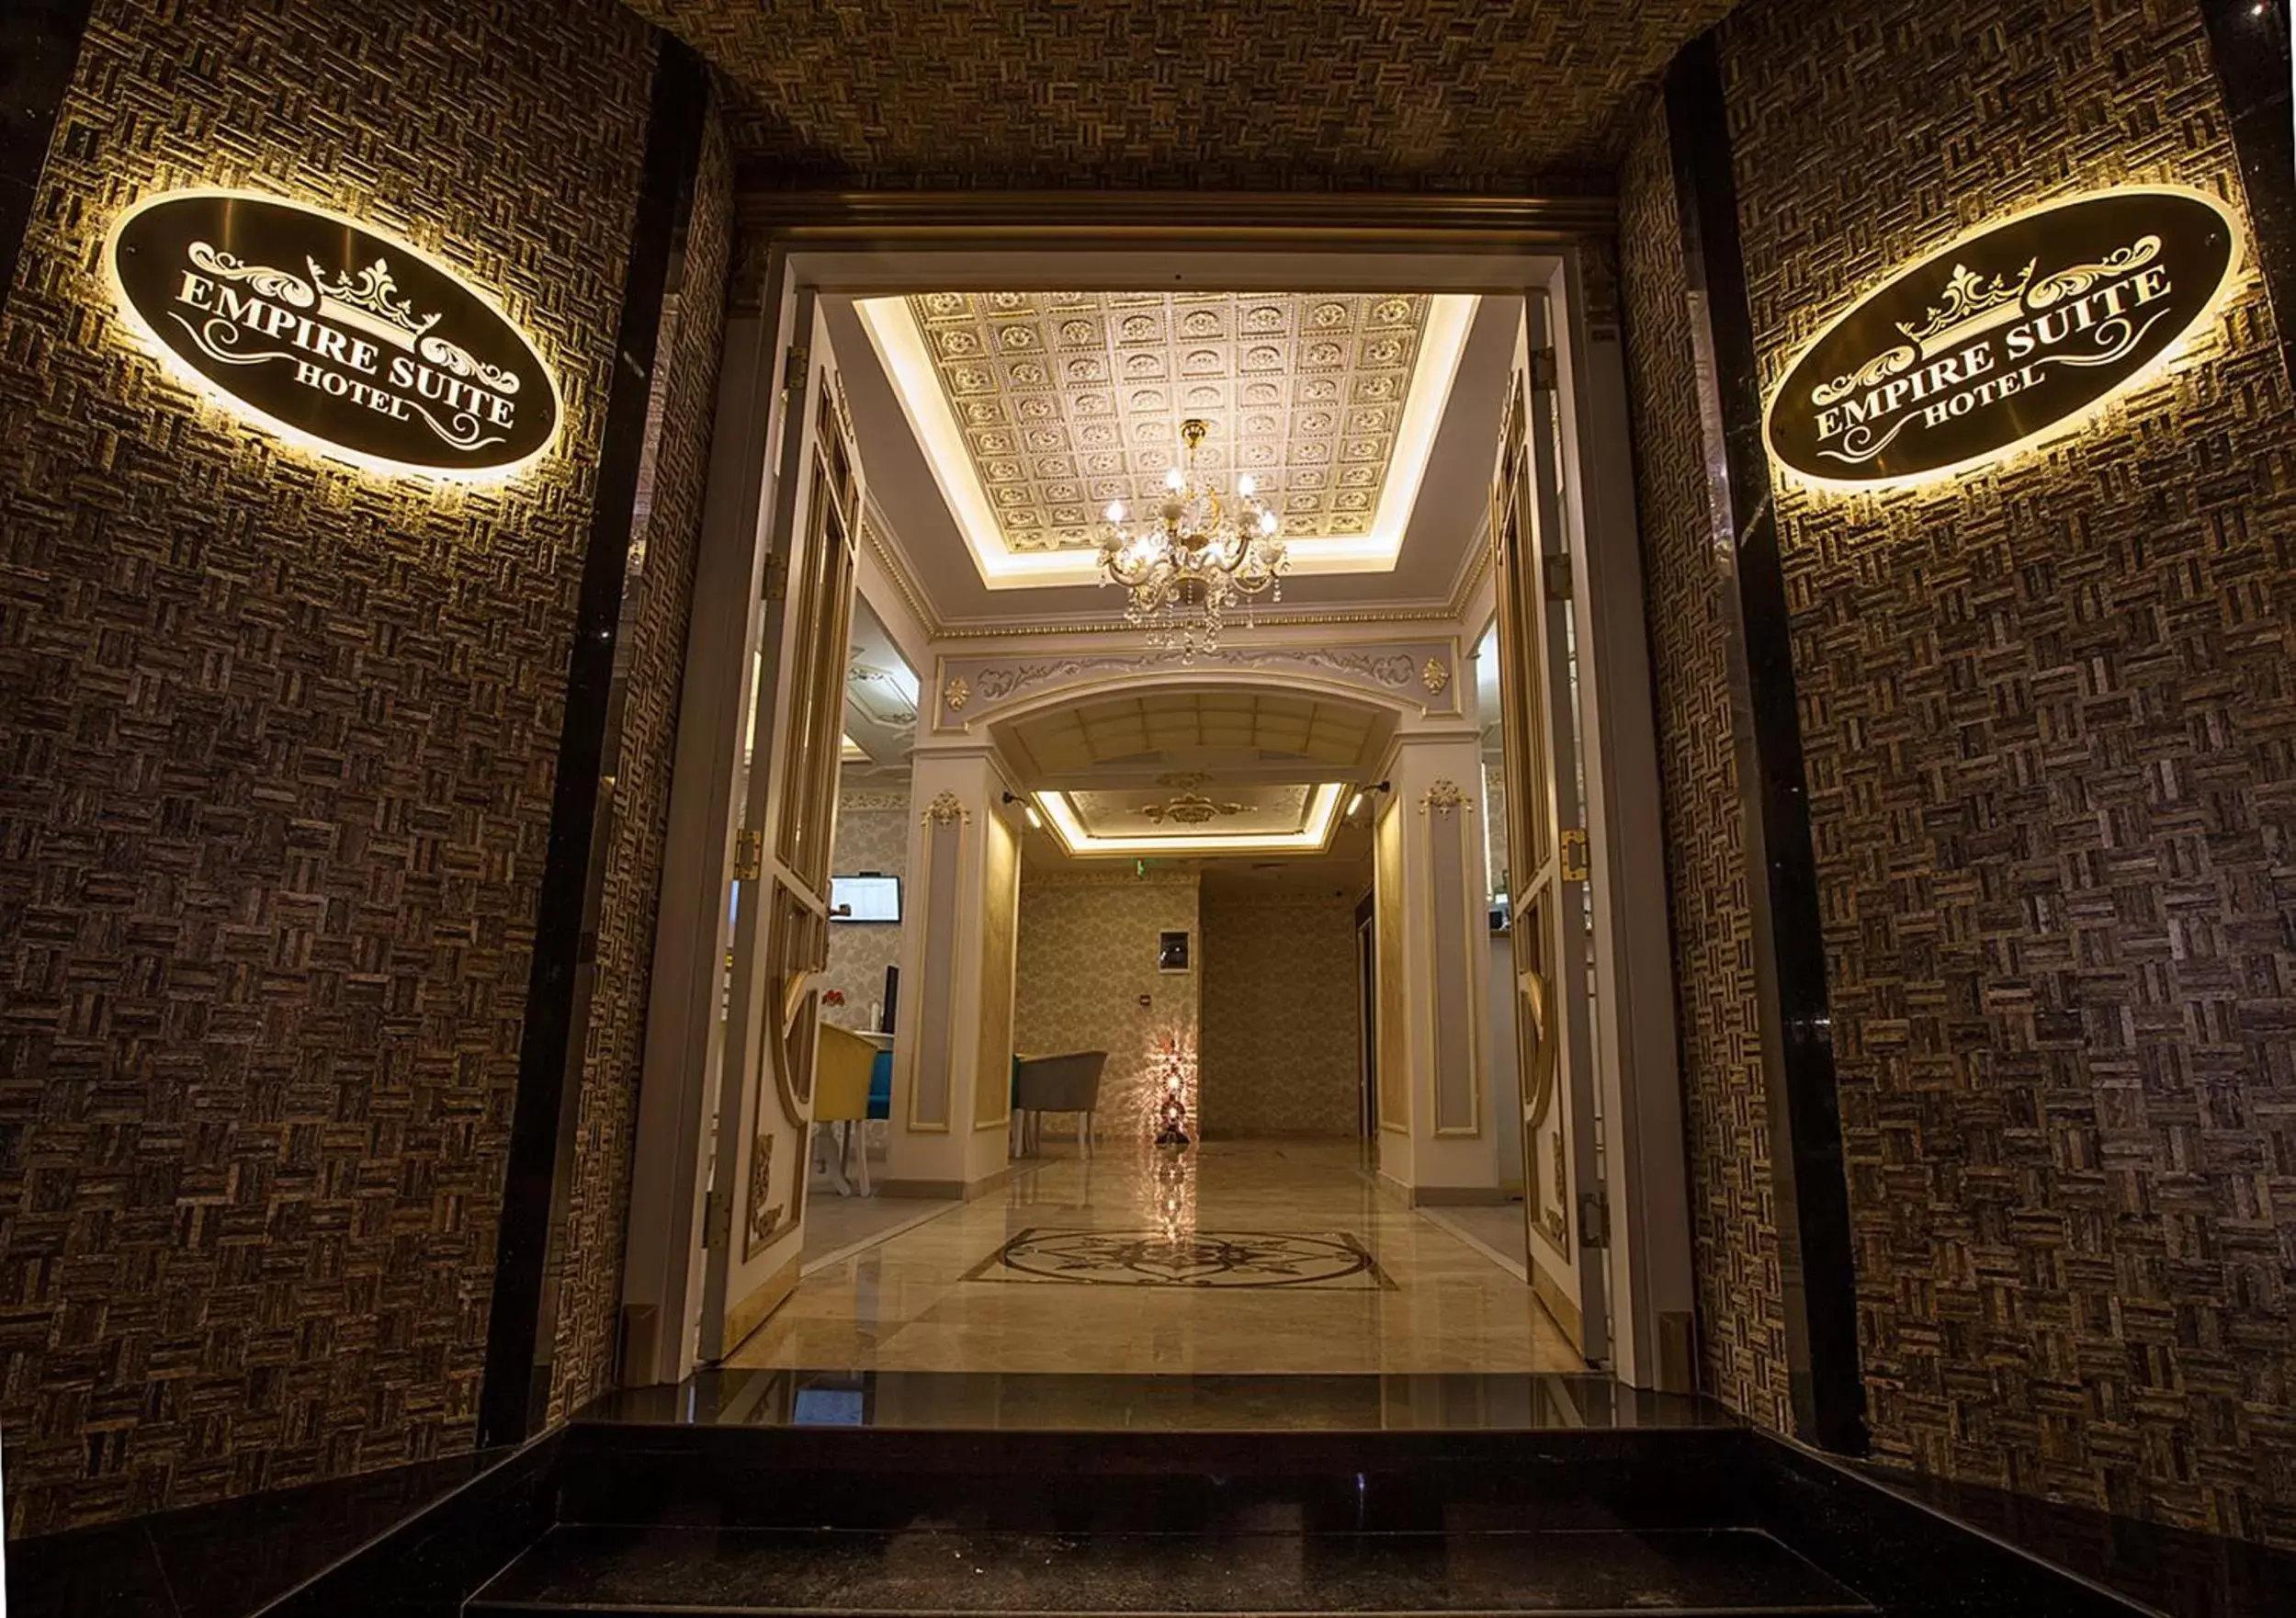 Facade/entrance in Empire Suite Hotel